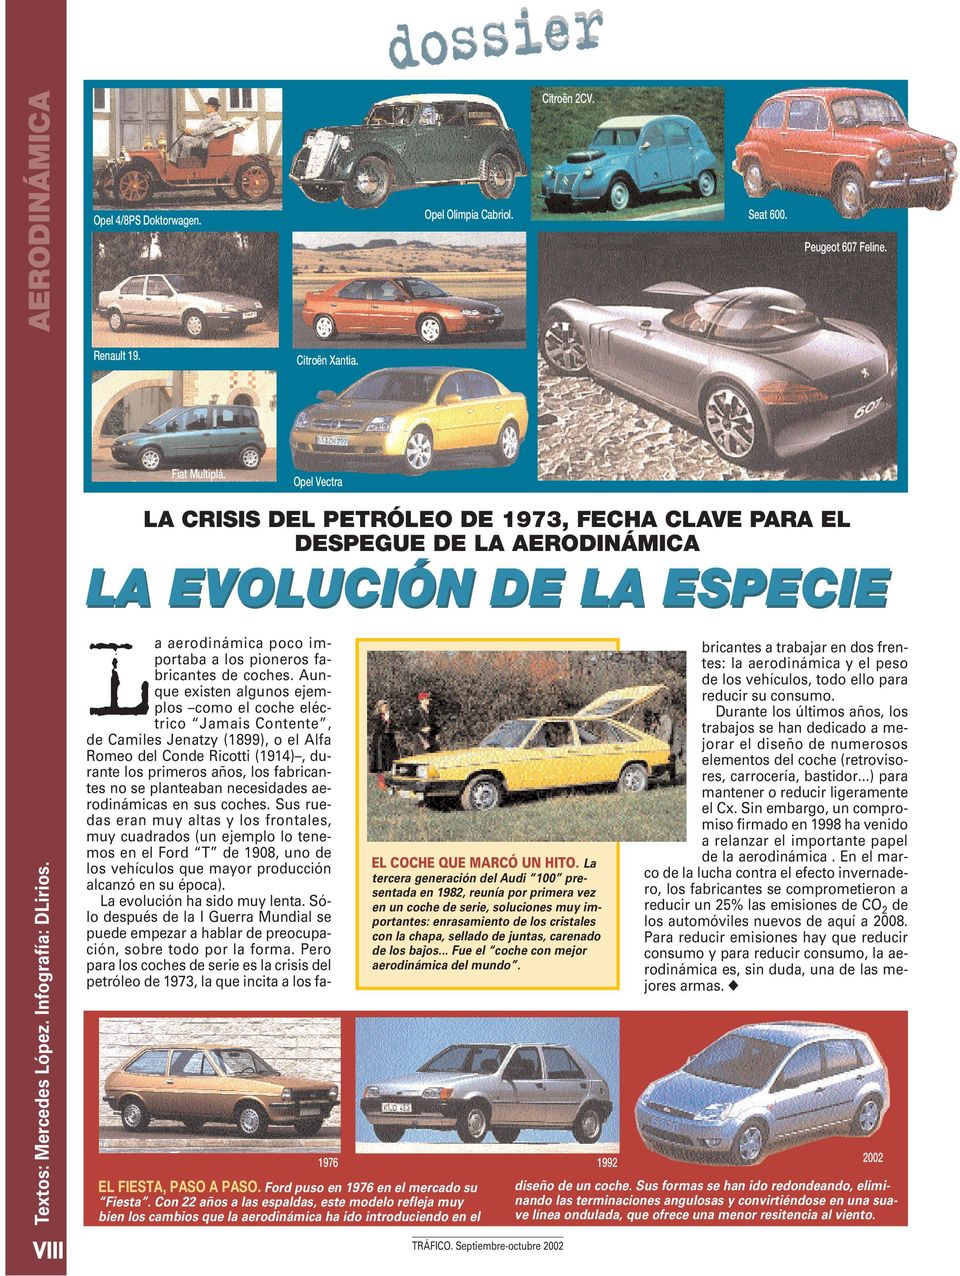 Ford puso en 1976 en el mercado su Fiesta. Con 22 años a las espaldas, este modelo refleja muy bien los cambios que la aerodinámica ha ido introduciendo en el EL COCHE QUE MARCÓ UN HITO.